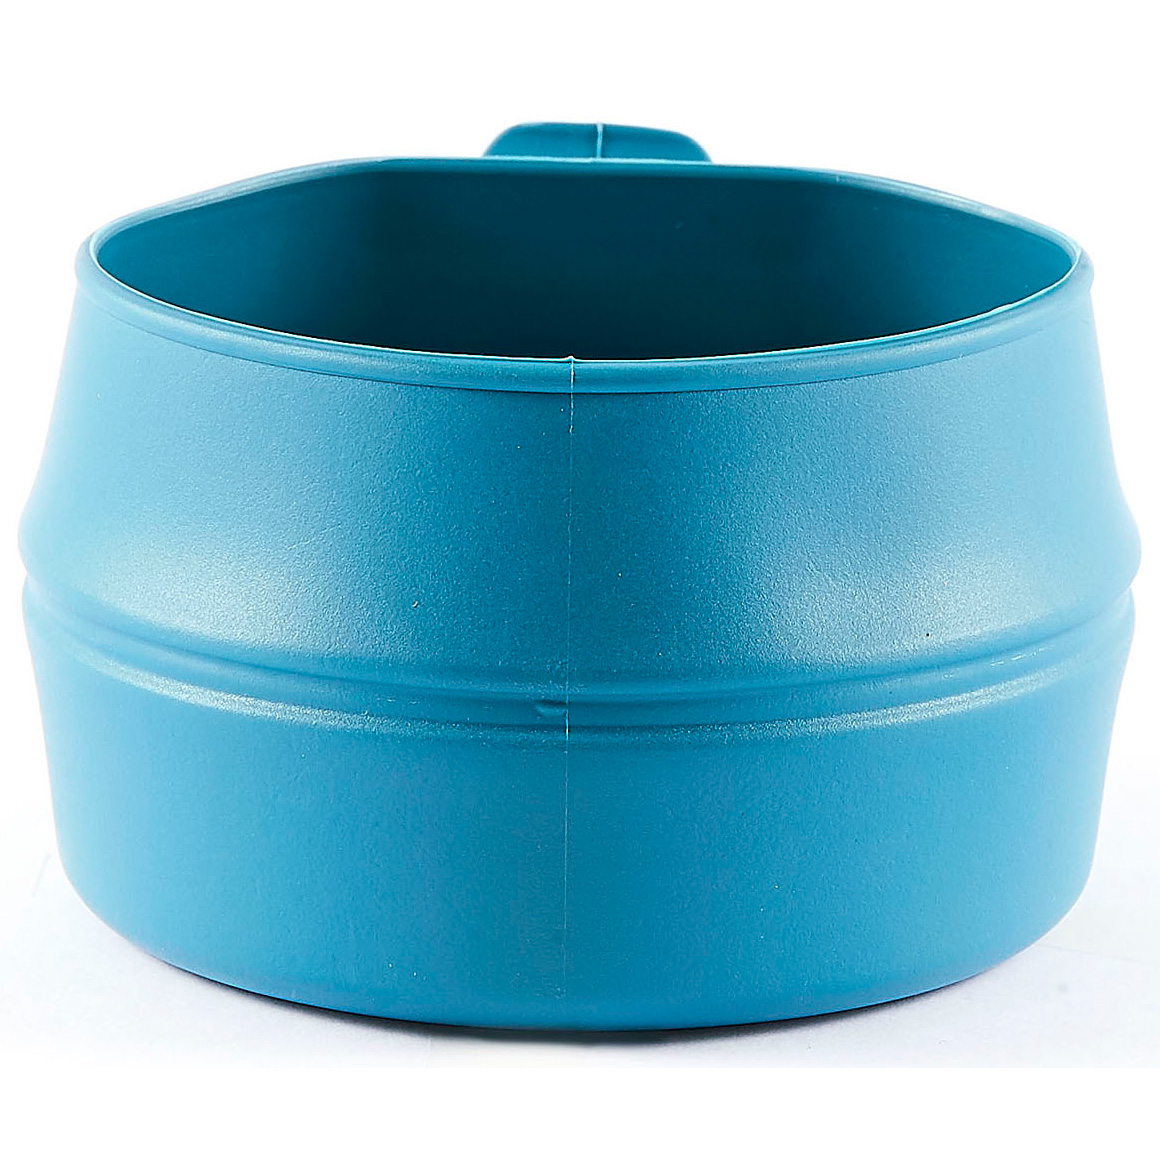 Produktbild von Wildo Fold-A-Cup GREEN - Faltbare Tasse 0.25L - Azure